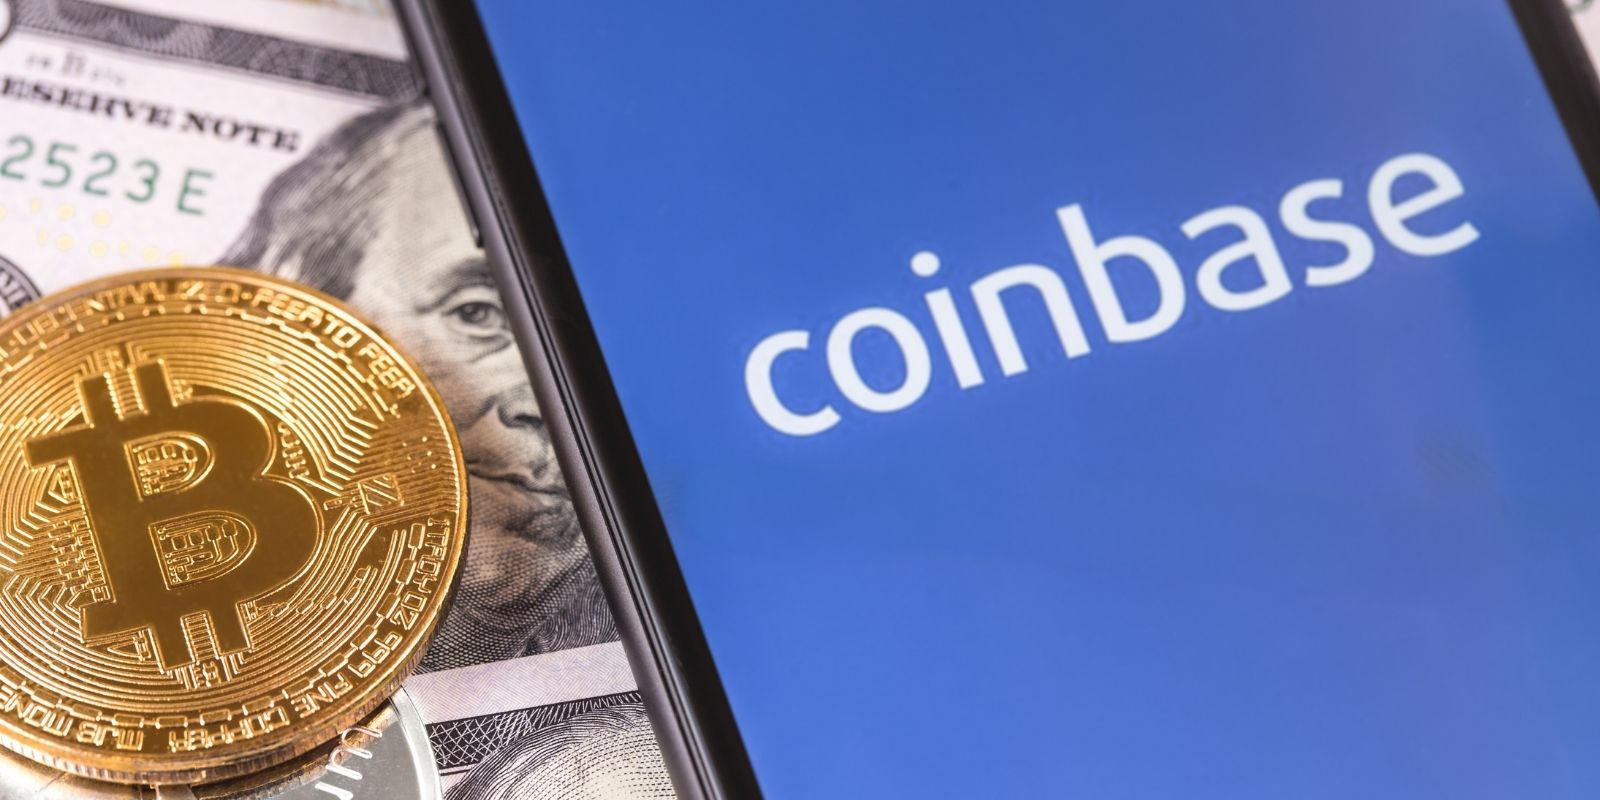 La plateforme de crypto-monnaies Coinbase envisage d'entrer en Bourse